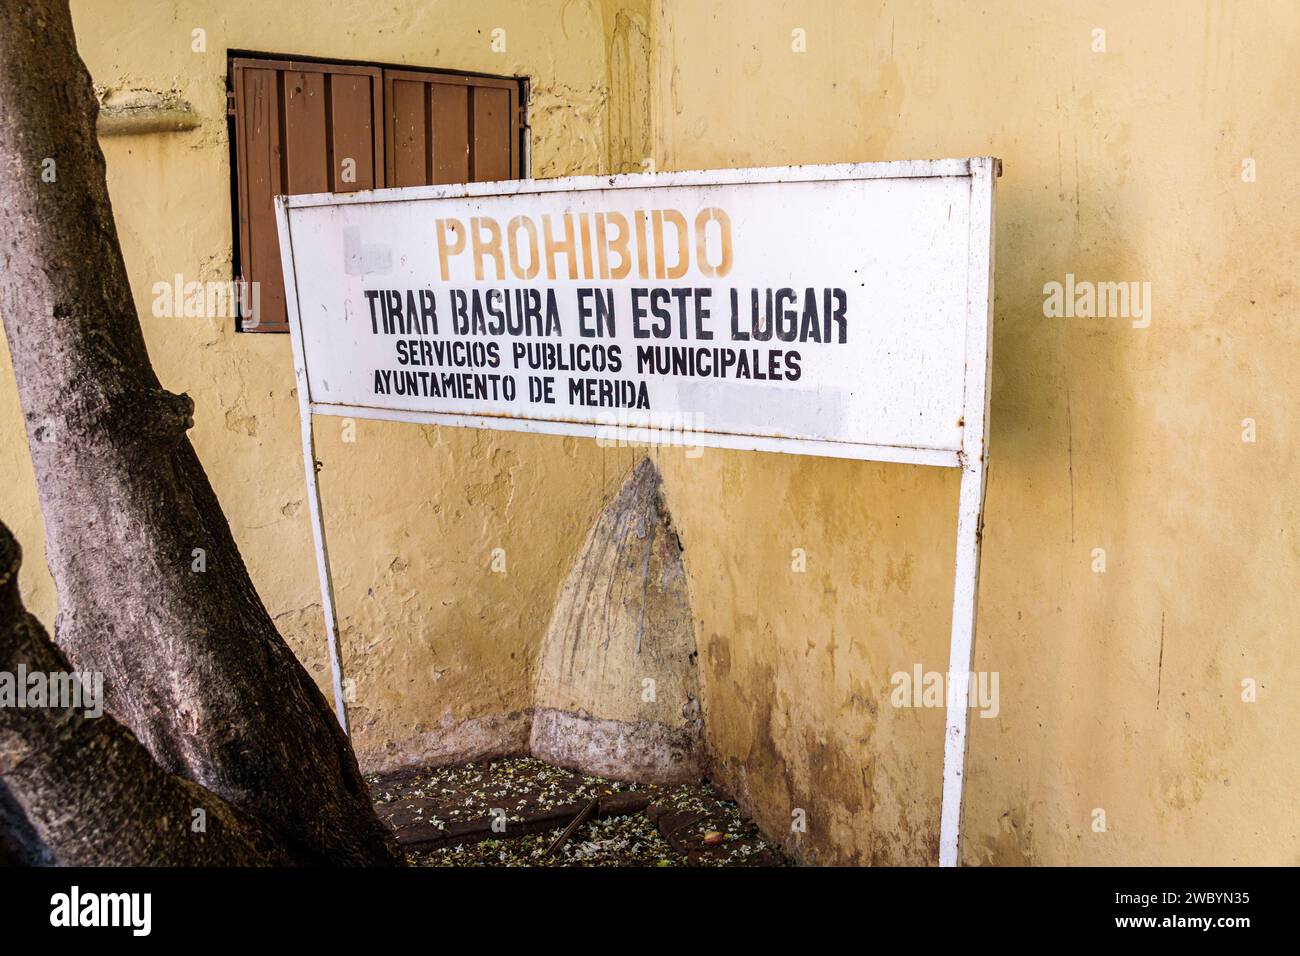 Merida Mexico, Centro Historico Central Historico, zentrales historisches Viertel, das Werfen von Müll verboten, das Rathaus-Schild für öffentliche Dienste warnt Stockfoto